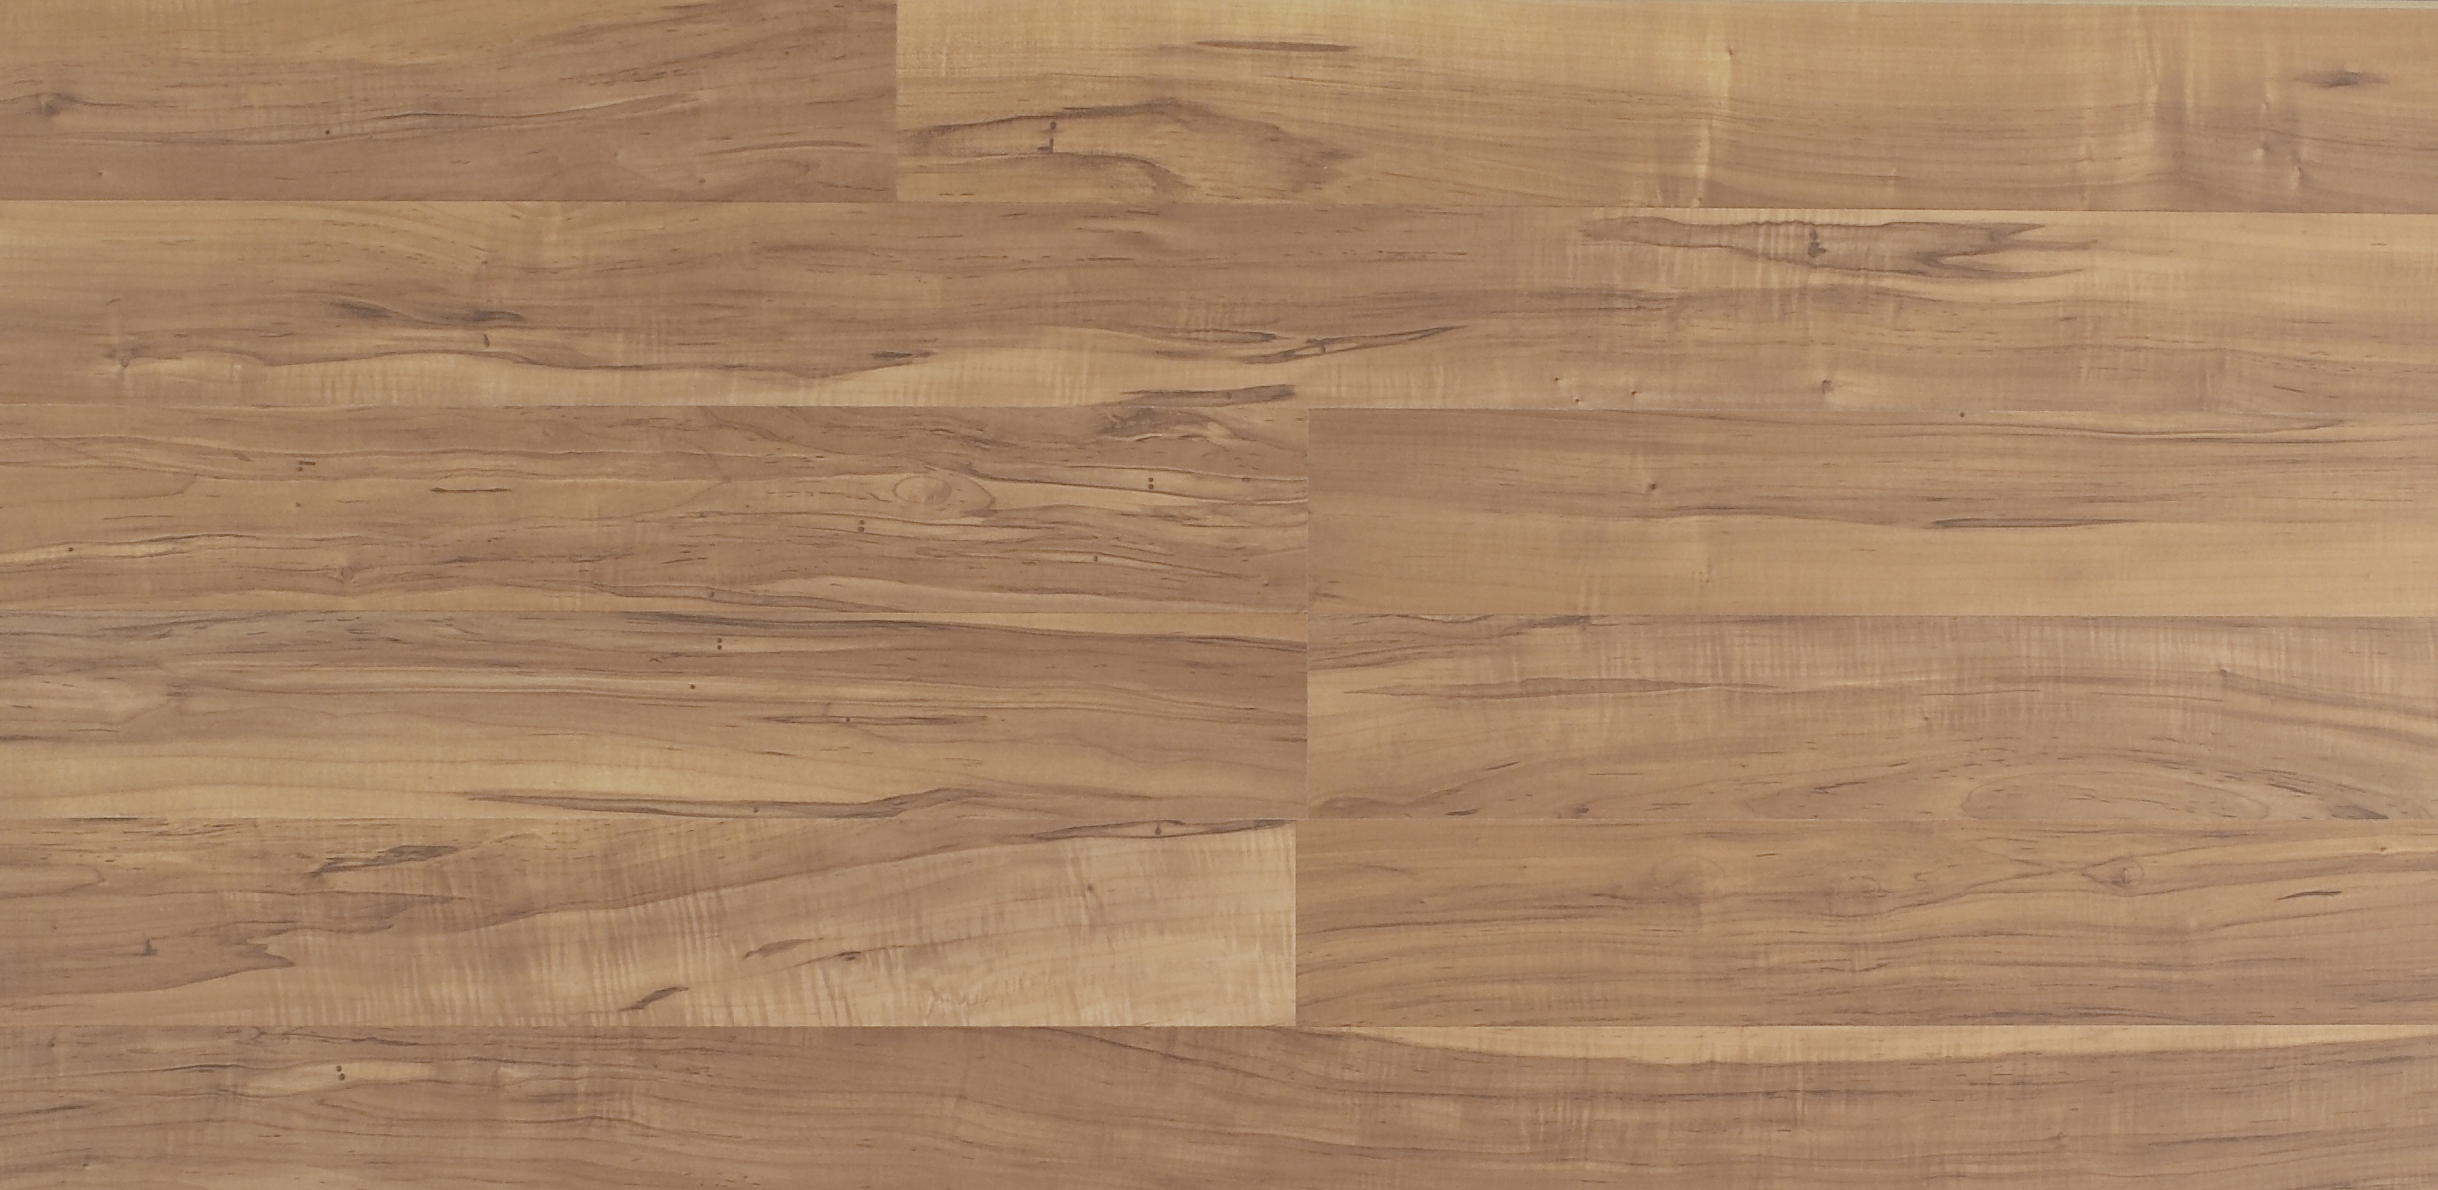 Текстура дерево, деревянная текстура скачать бесплатно, фото, download wood texture, wooden background